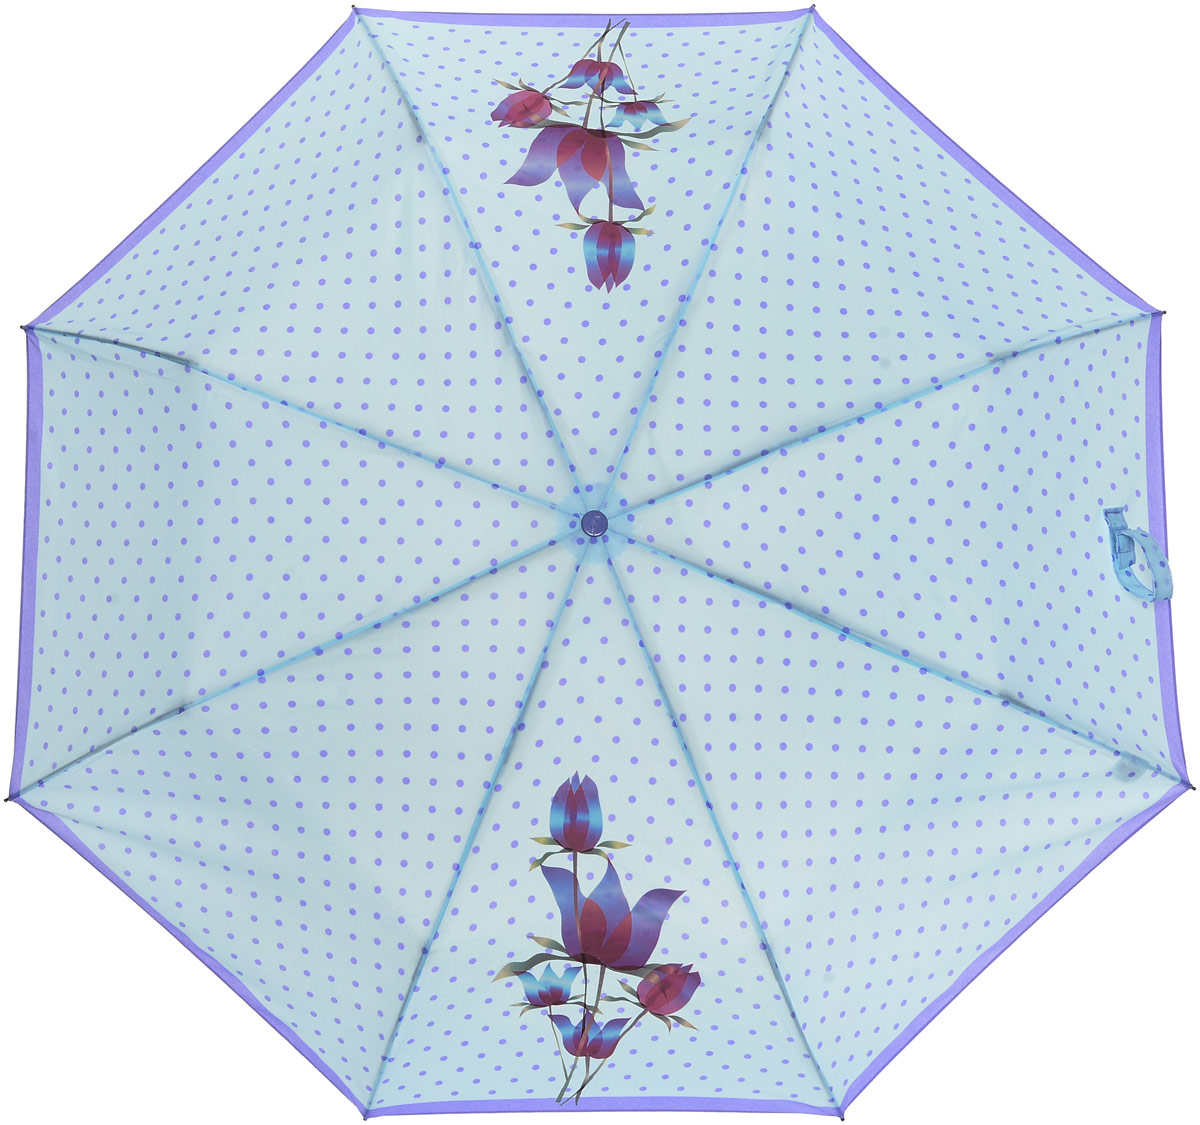 Зонт женский Airton, механический, 3 сложения, цвет: белый, фуксия. 3511-180